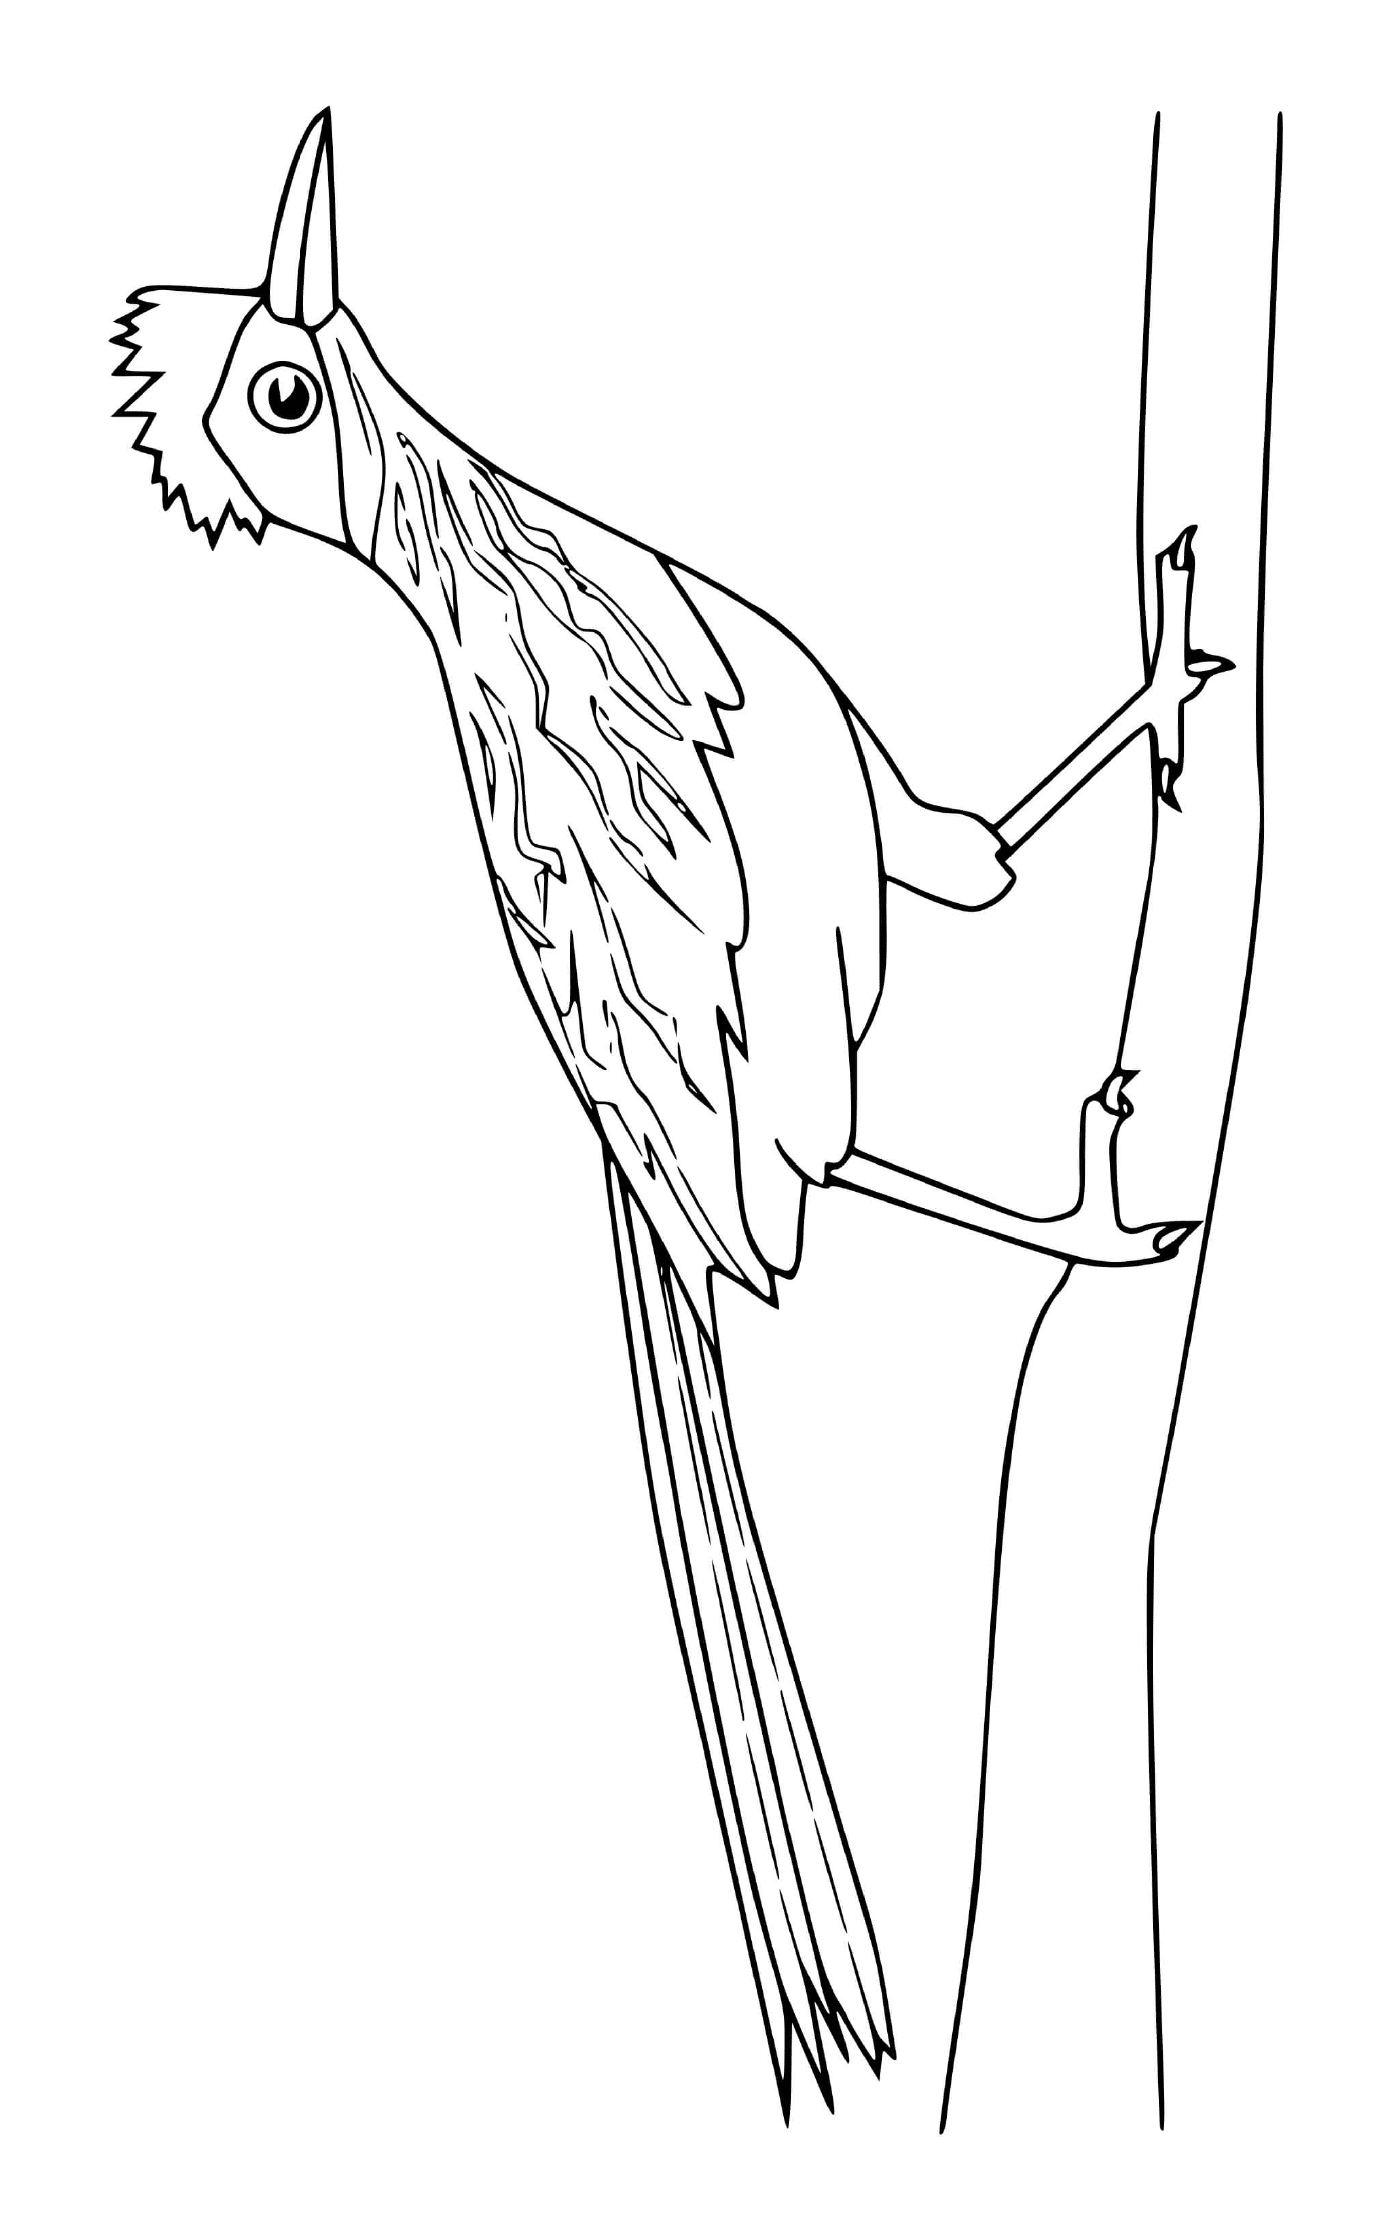  pássaro empoleirado em um galho de árvore 